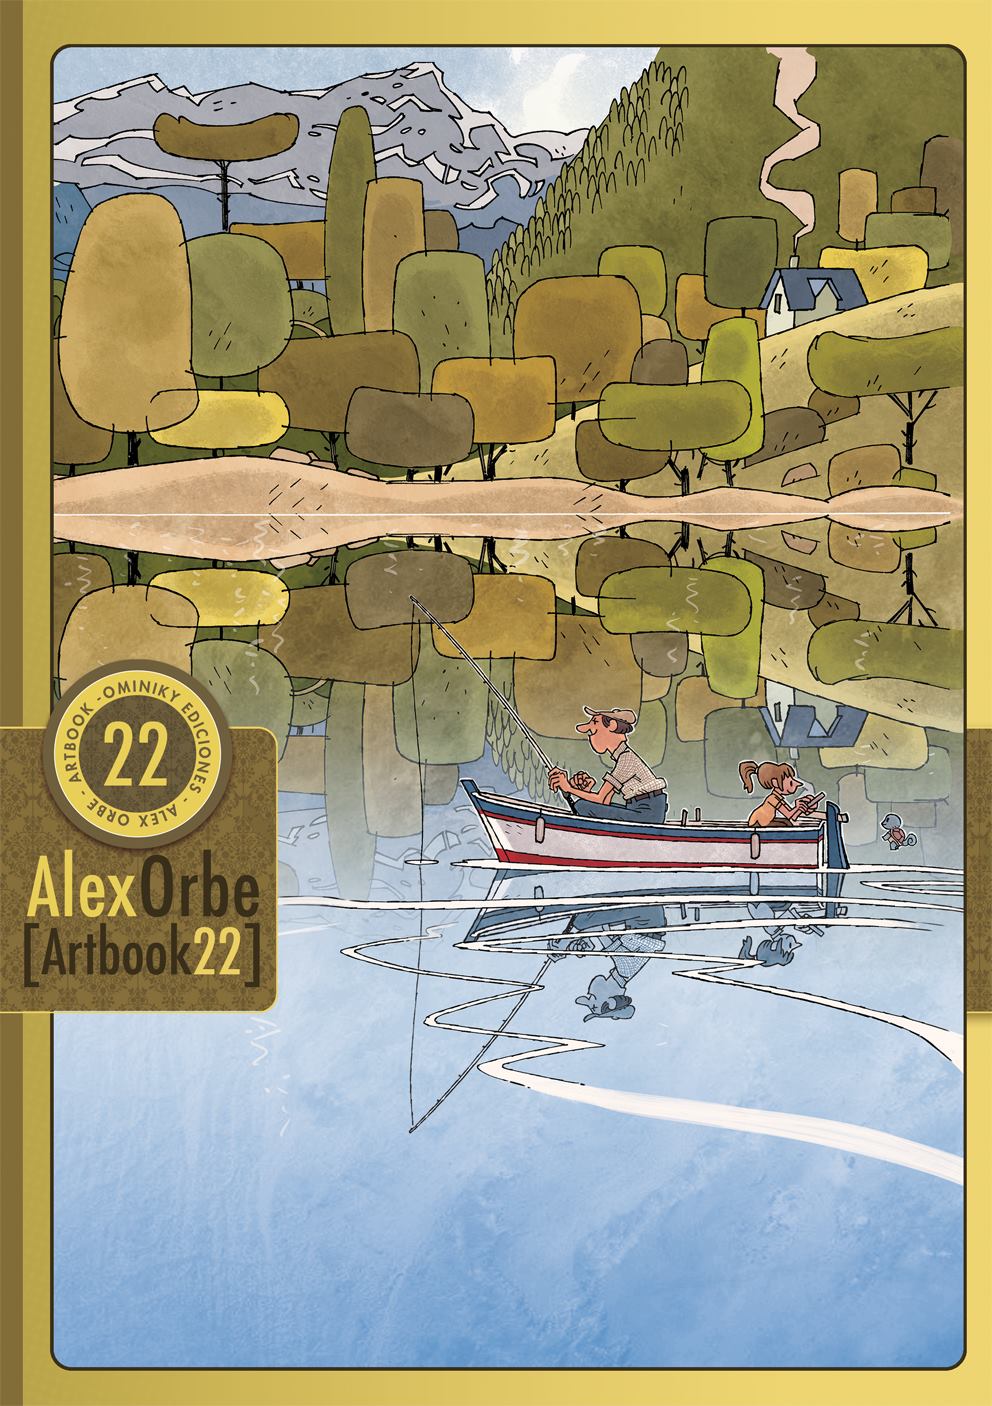 Alex Orbe [Ominiky Ediciones Artbook 22]